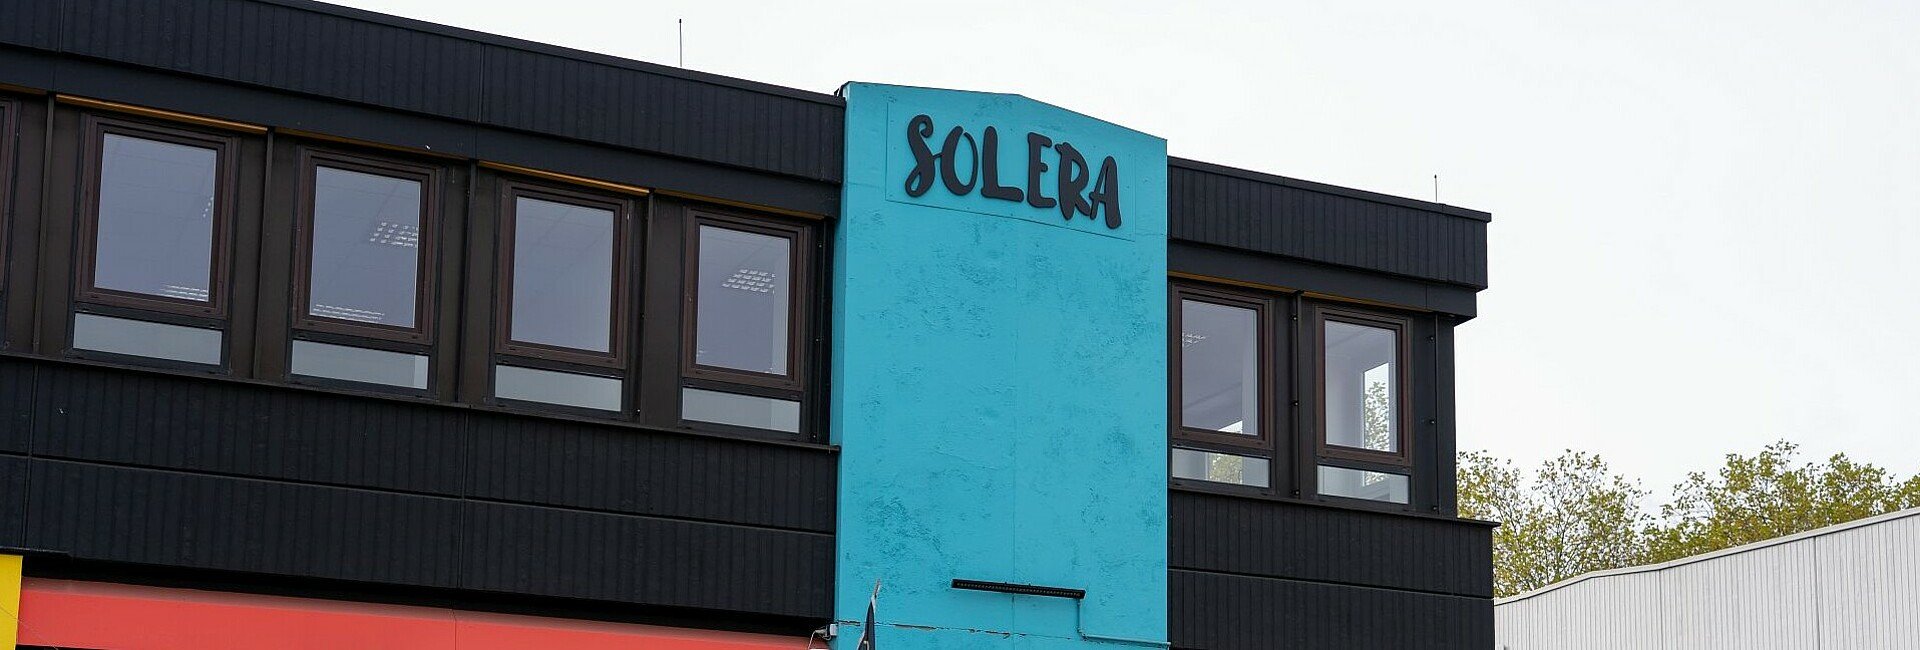 Spanischer Supermarkt Solera in Köln-Bickendorf